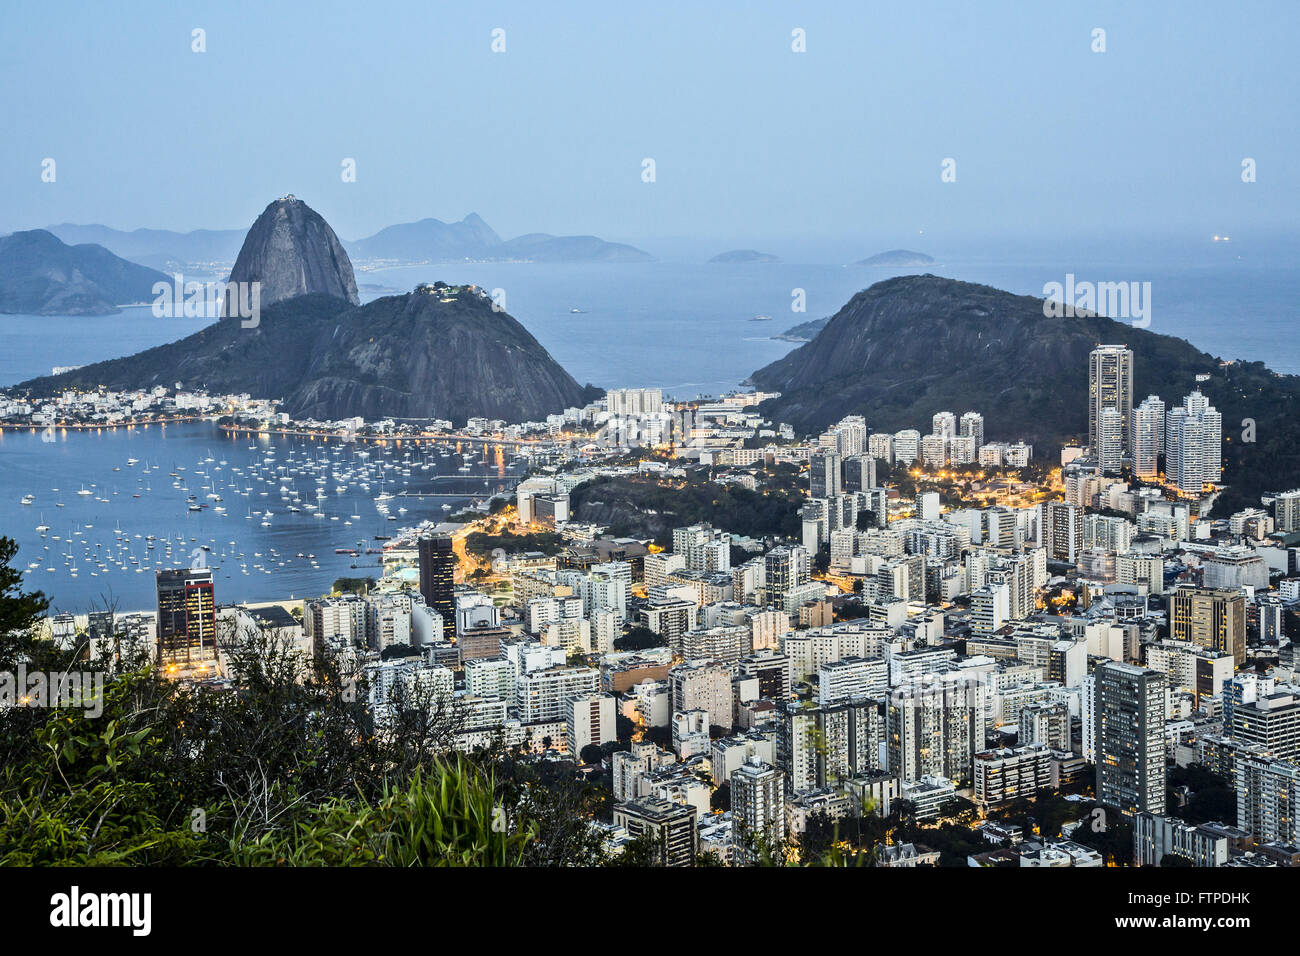 Vista de la bahía de Botafogo en la Bahía de Guanabara, el Pan de Azúcar y Urca Foto de stock